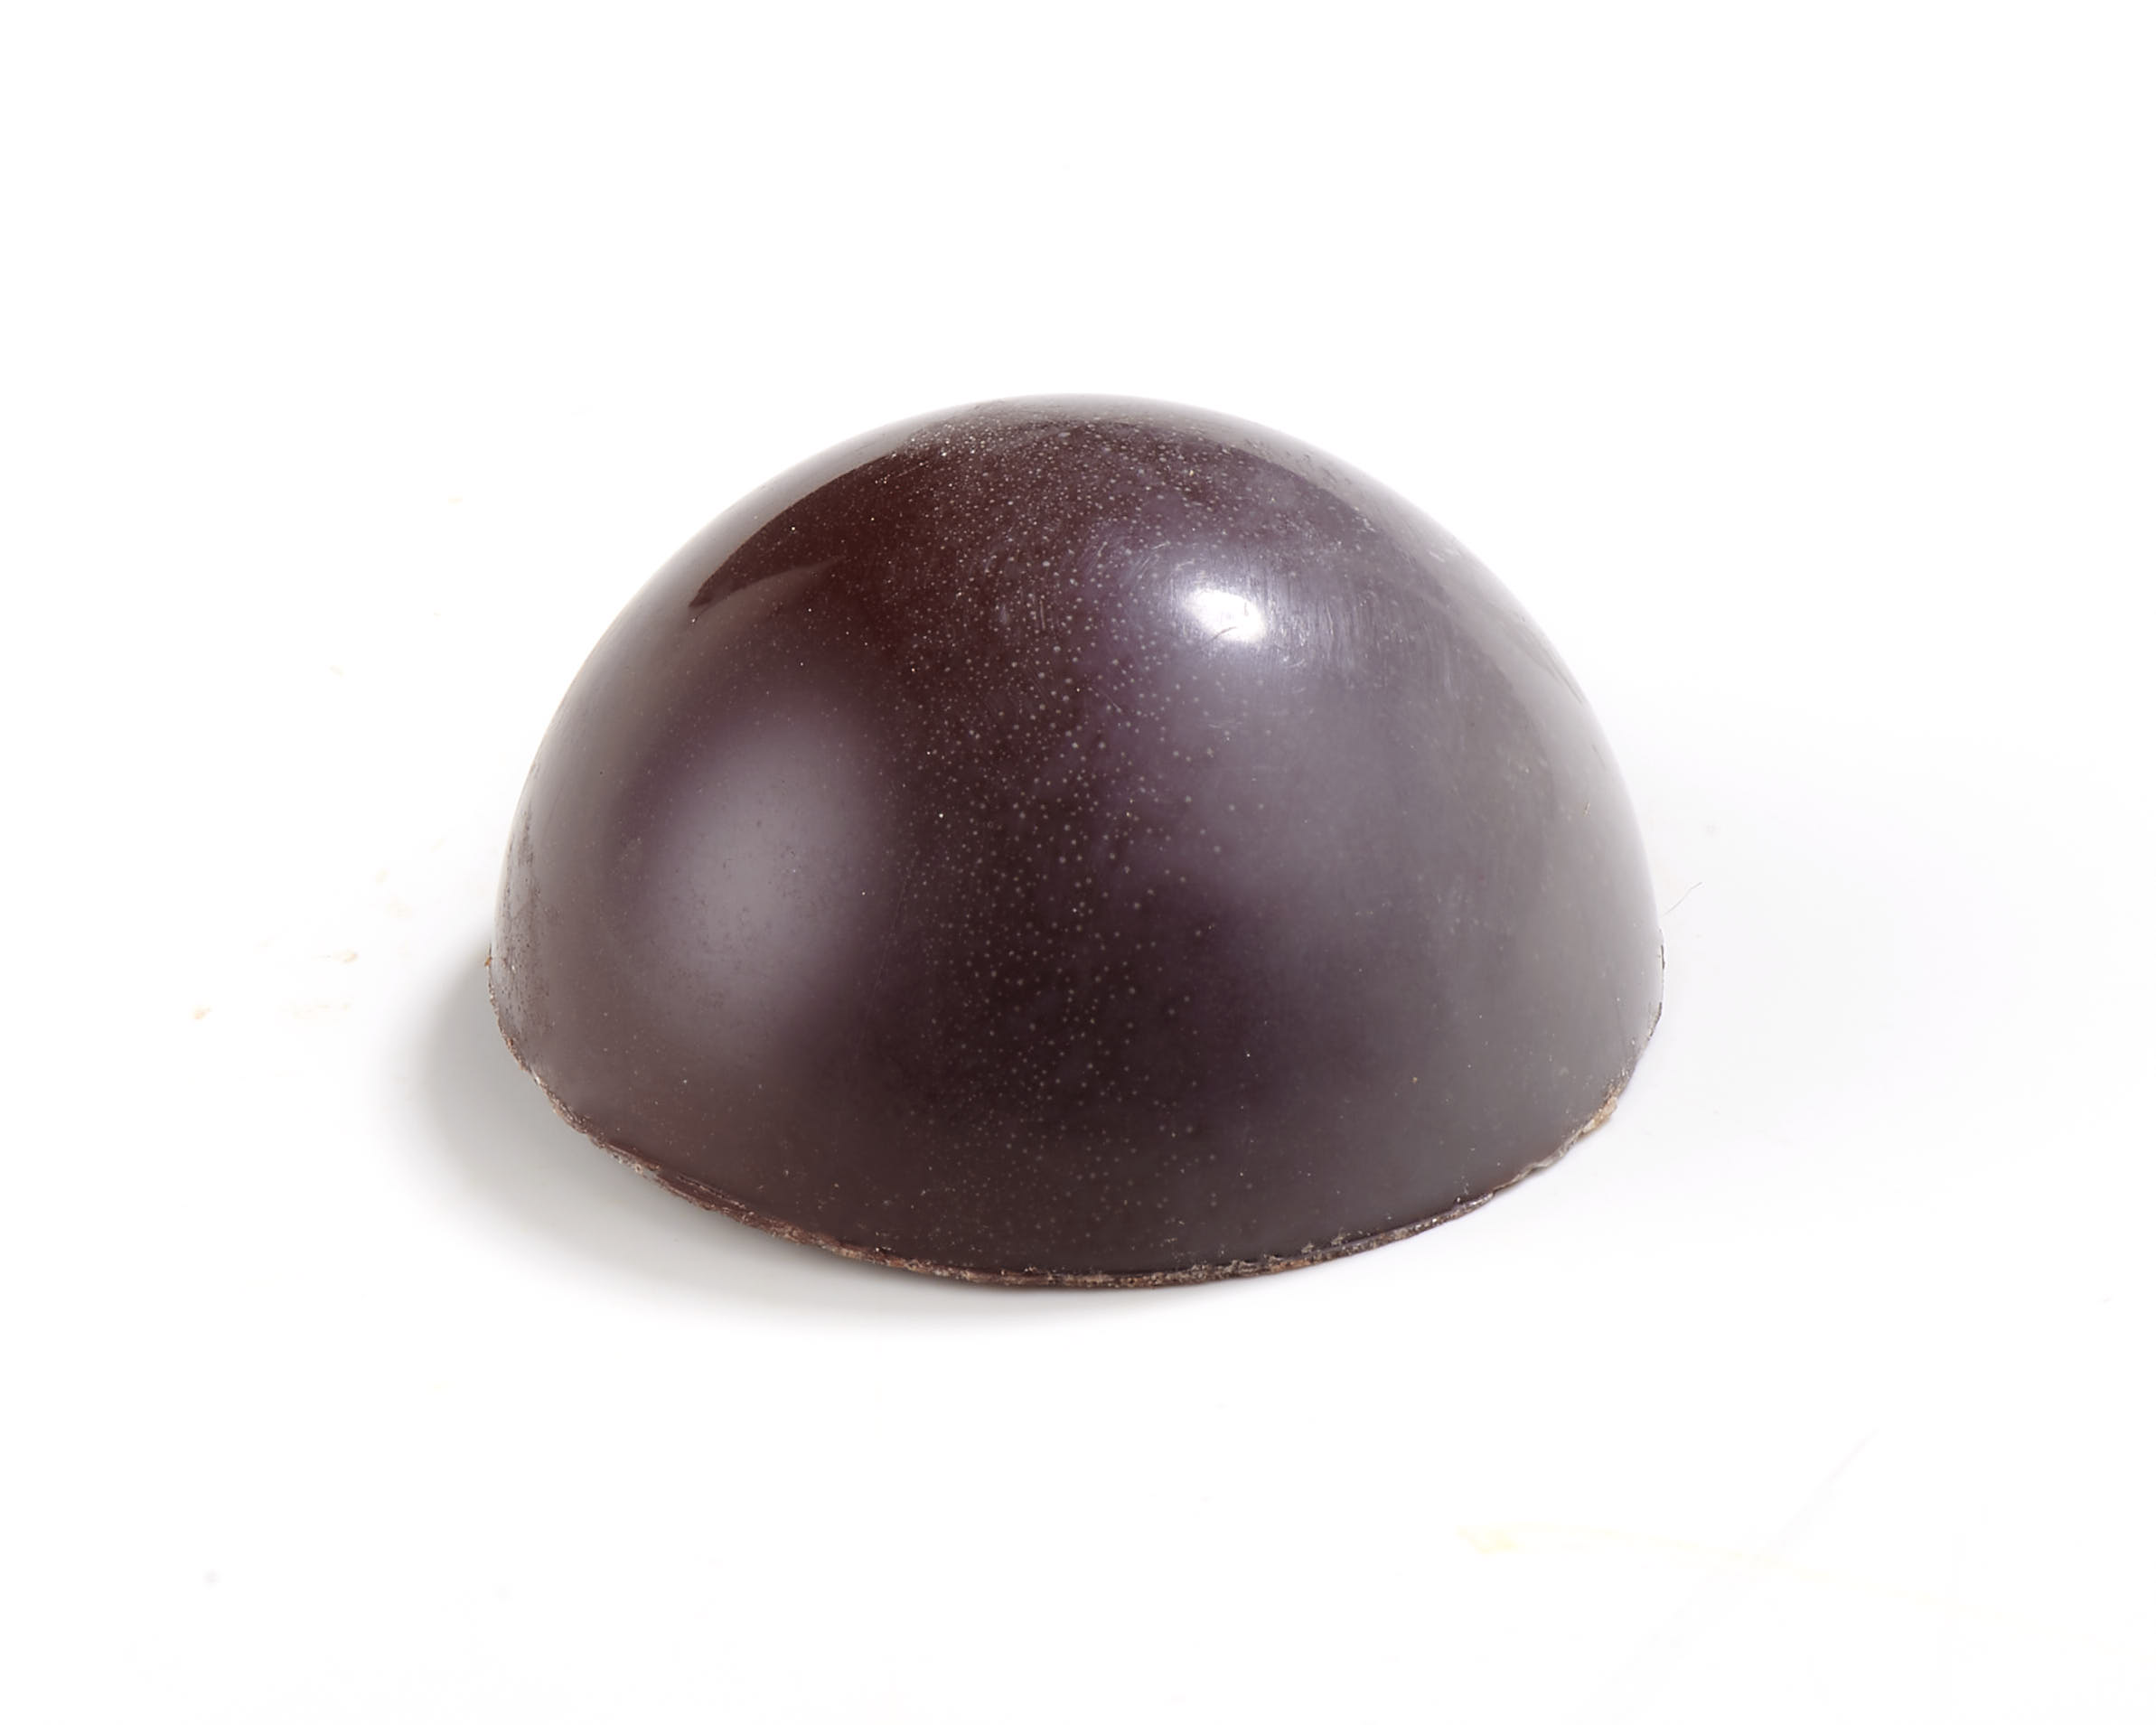 Bulle noire Vanille - Caramel fondant Vanille en coque de chocolat noir